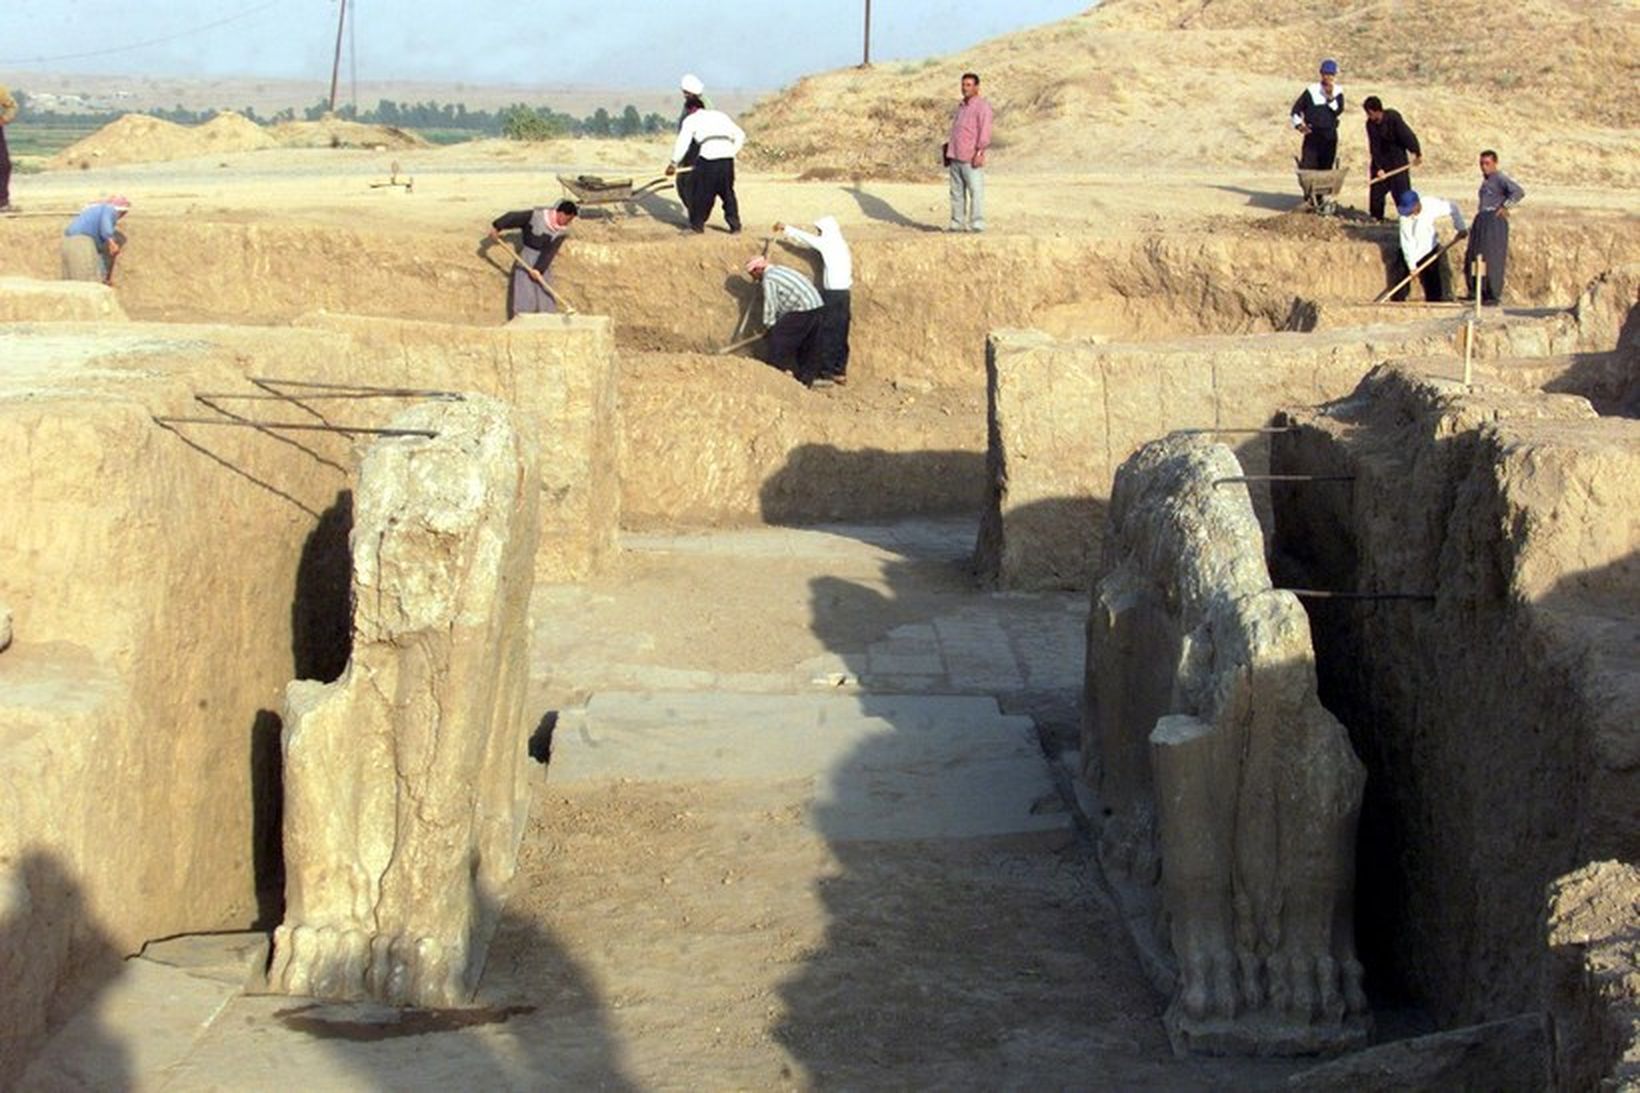 Mynd frá Nimrud sem tekin er í júlí árið 2001.